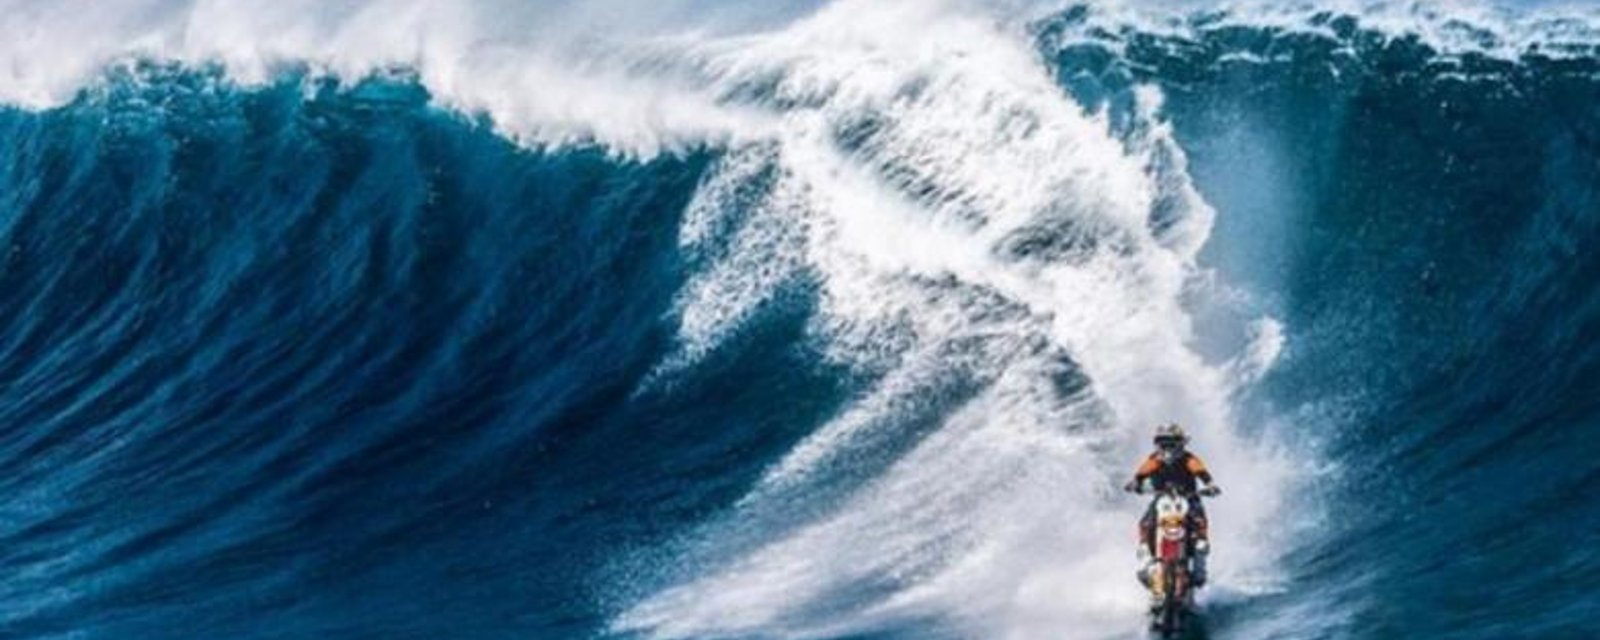 À VOIR: Un cascadeur surf une vague de la façon la plus folle qui soit!